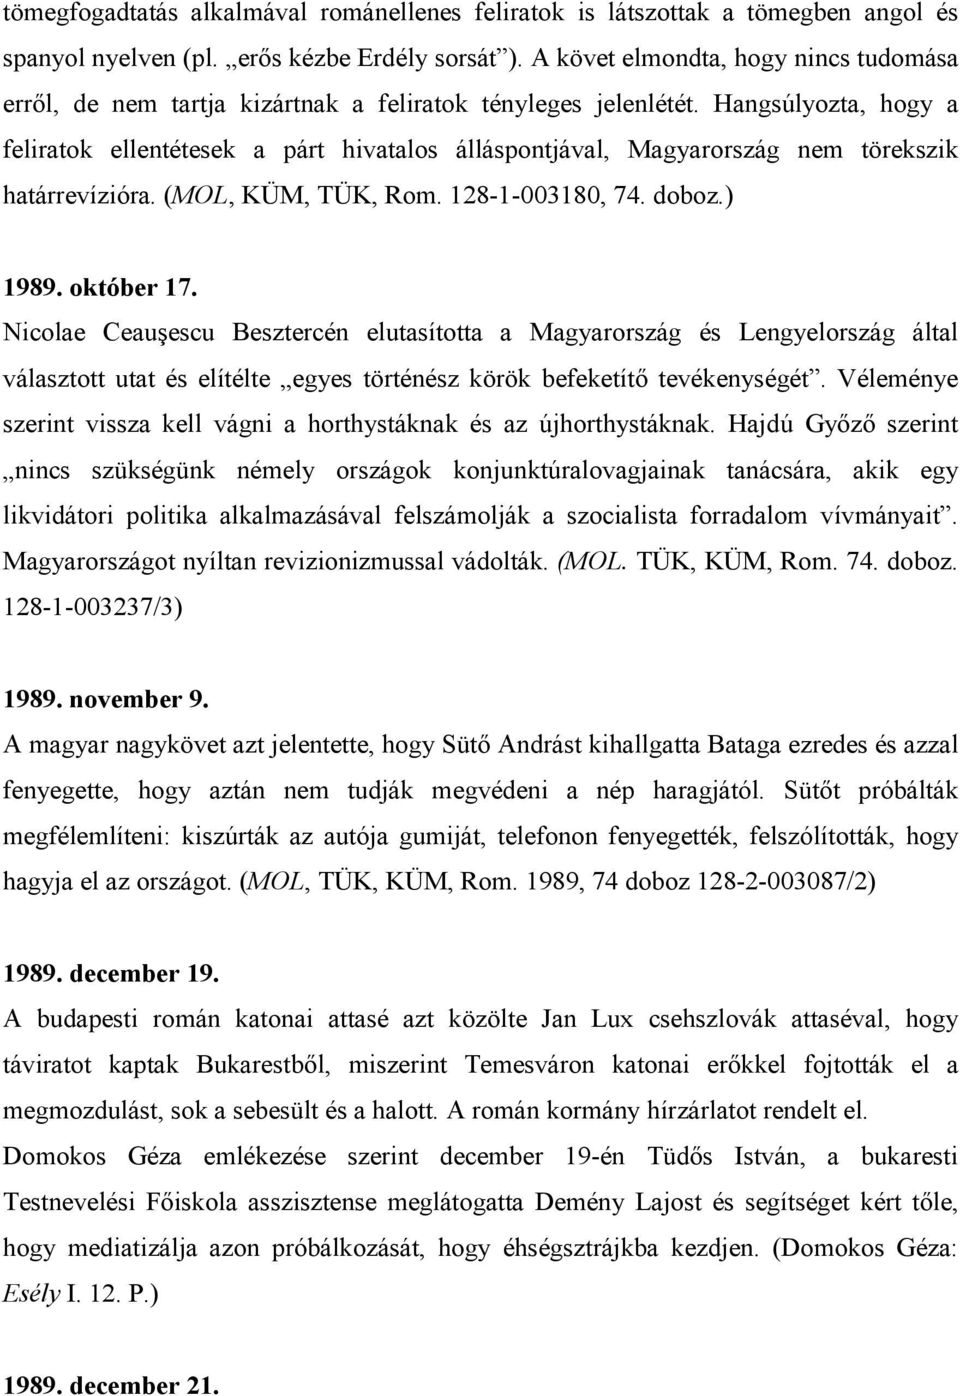 Hangsúlyozta, hogy a feliratok ellentétesek a párt hivatalos álláspontjával, Magyarország nem törekszik határrevízióra. (MOL, KÜM, TÜK, Rom. 128-1-003180, 74. doboz.) 1989. október 17.